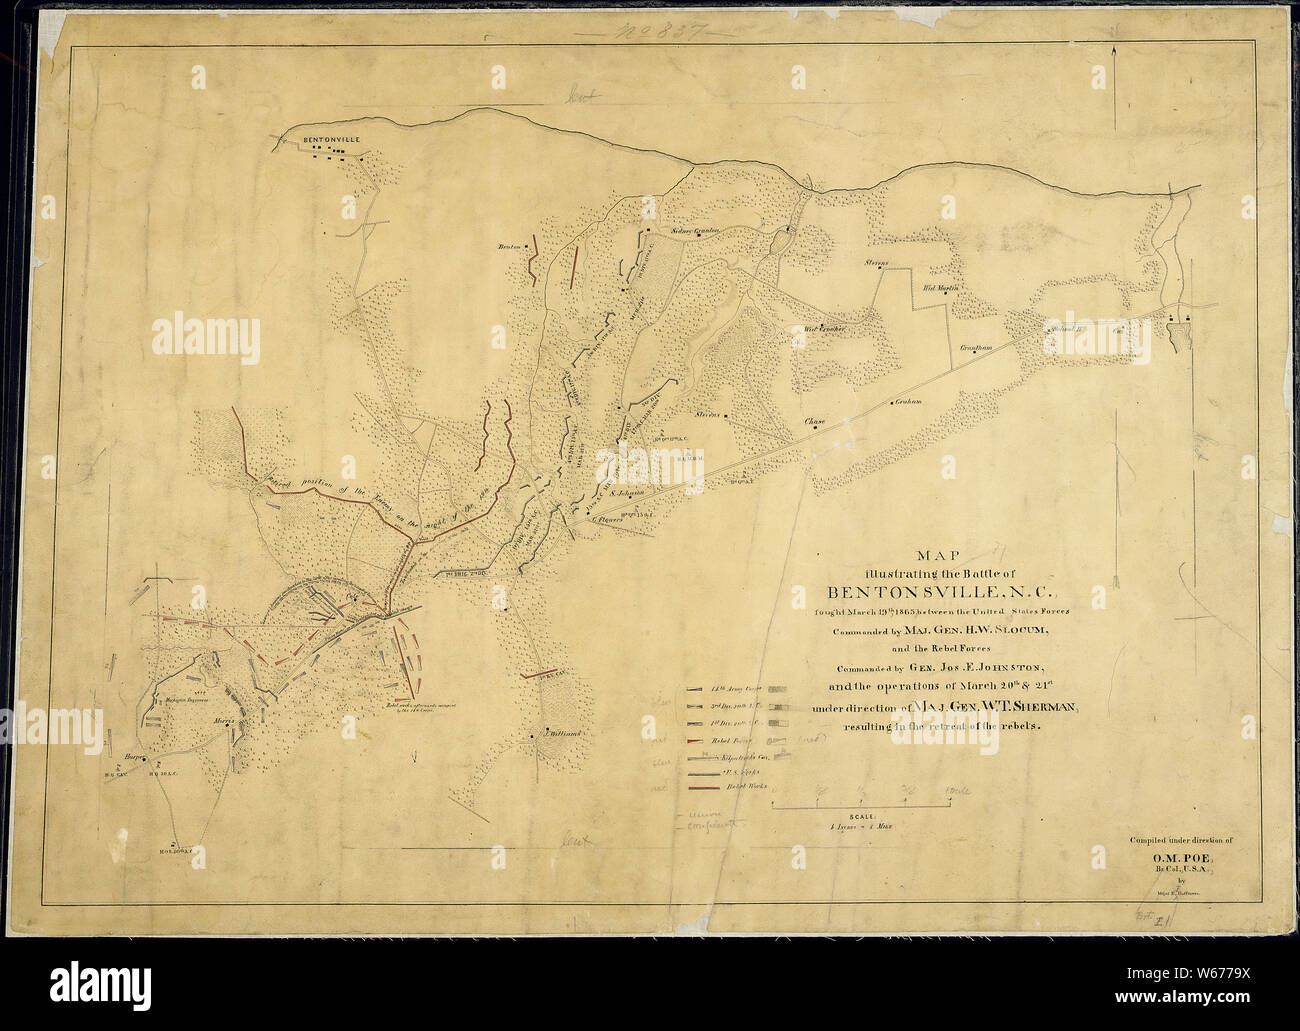 Mappa che illustra la battaglia di Bentonsville, N.C., combattuto Marzo 19th, 1865, tra gli Stati Uniti forze comandato dal magg. Gen. H. W. Slocum e le forze ribelli comandato dal gen. Jos. E. Johnston, e le operazioni di marzo ventesimo e ventunesimo sotto la direzione del Magg. Gen. W. T. Sherman risultante in la ritirata dei ribelli. Compilato sotto la direzione di O. M. Poe, Br. [Bvt.] Col., U.S.A., da grandi E. [F] Hoffmann. Foto Stock